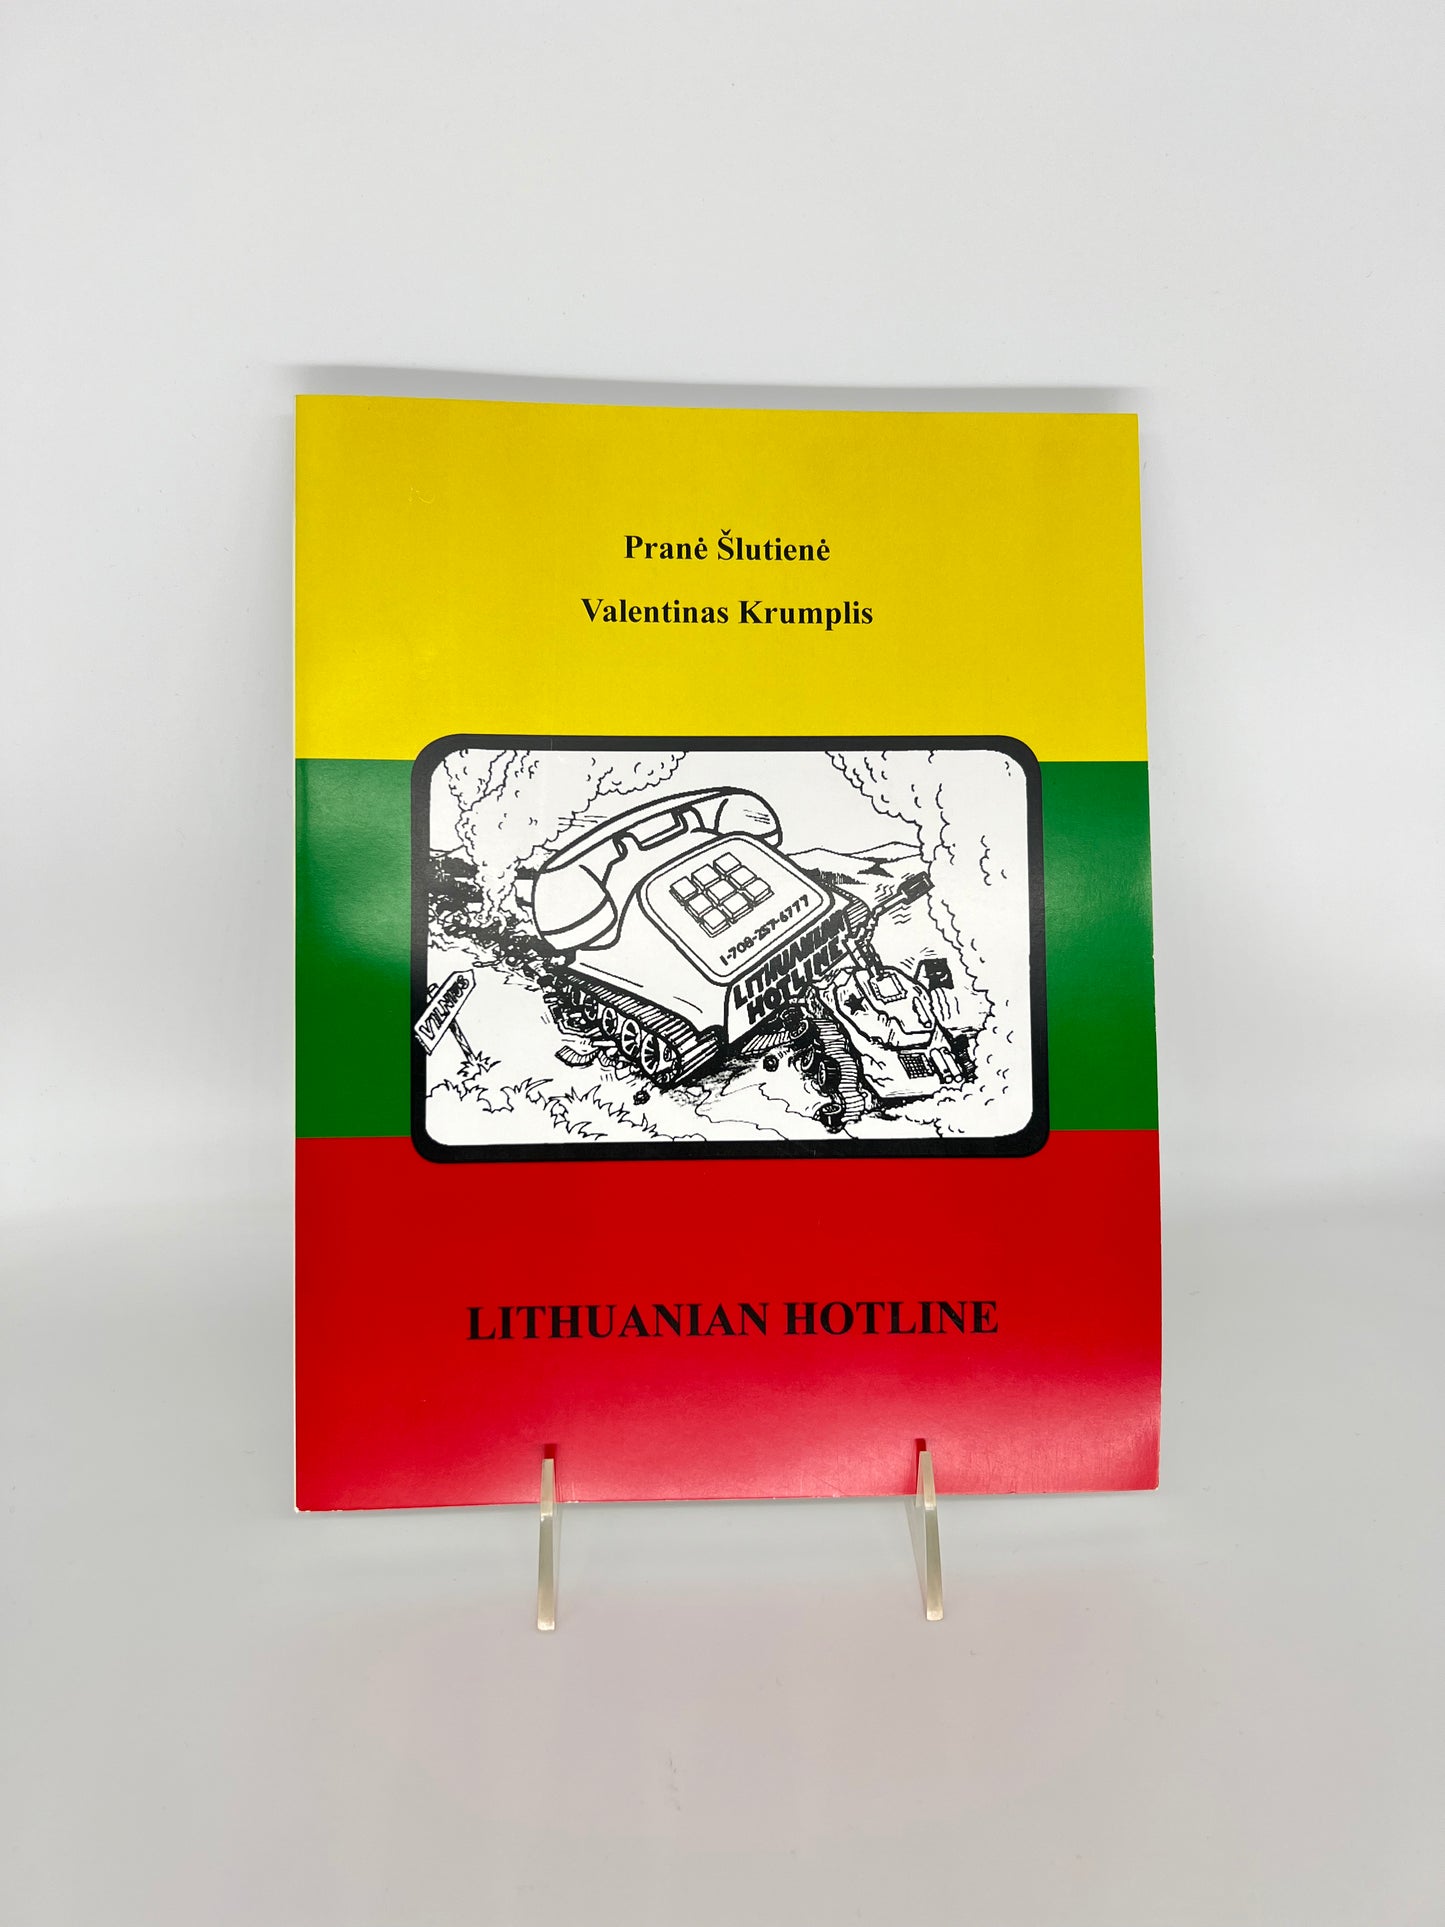 Lithuanian Hotline